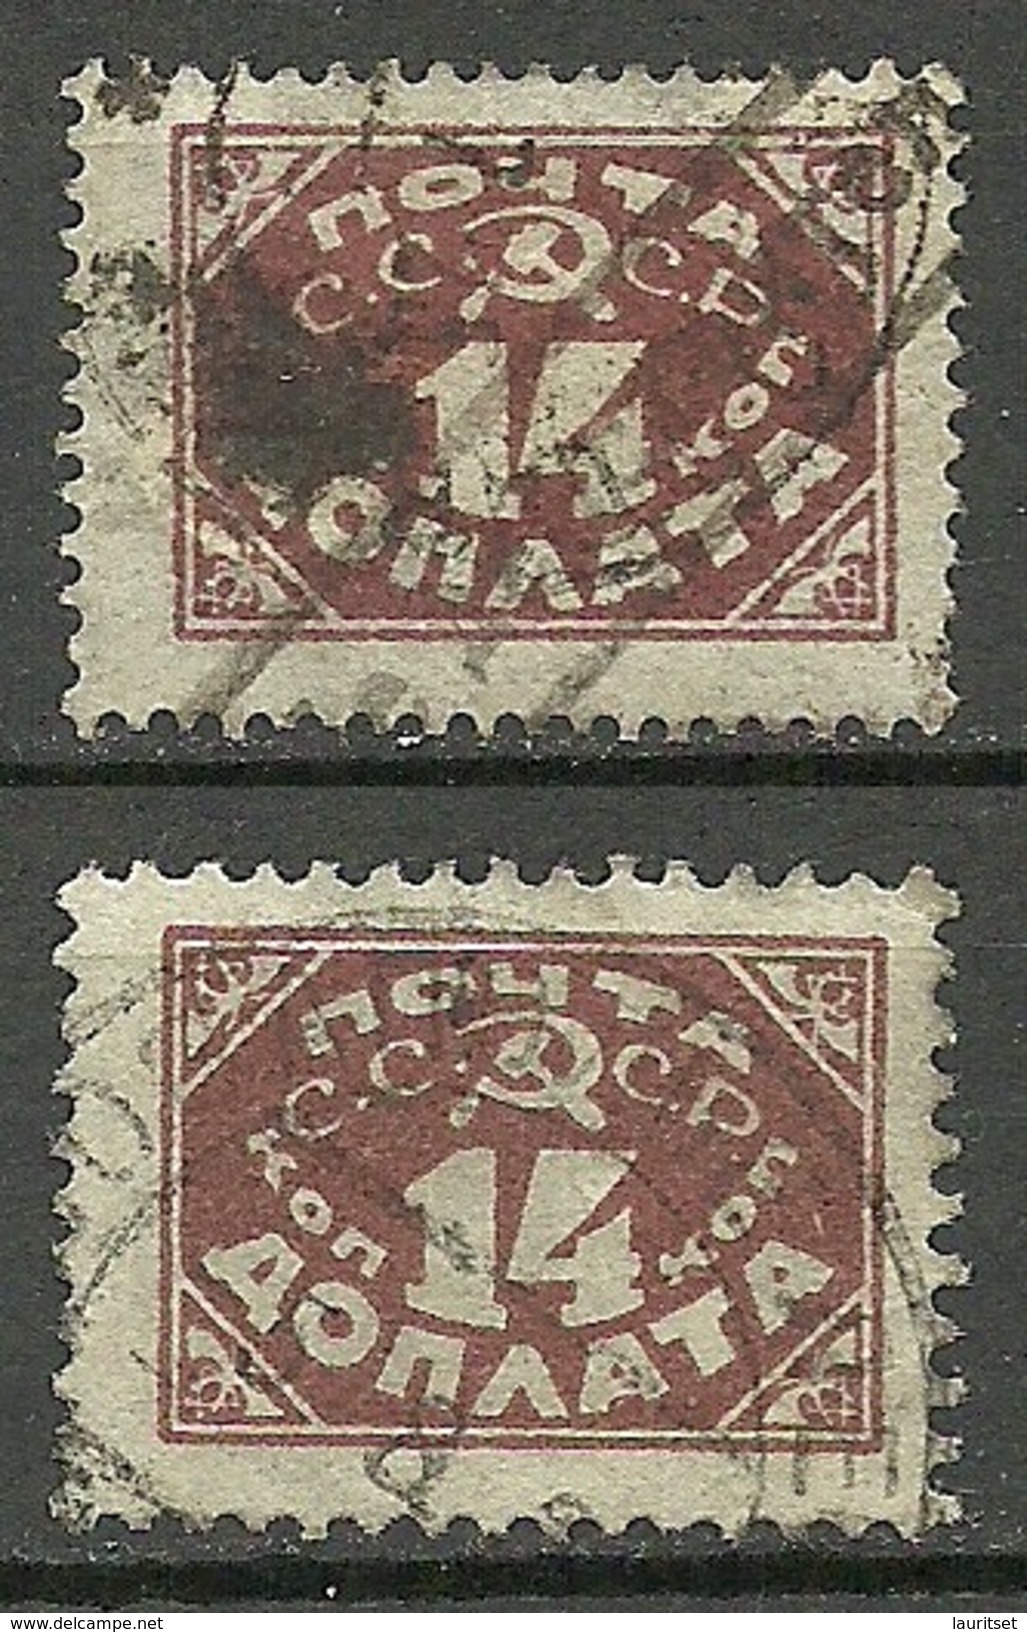 RUSSLAND RUSSIA 1925 Porto Postage Due Michel 17 I A + 17 I B O - Portomarken